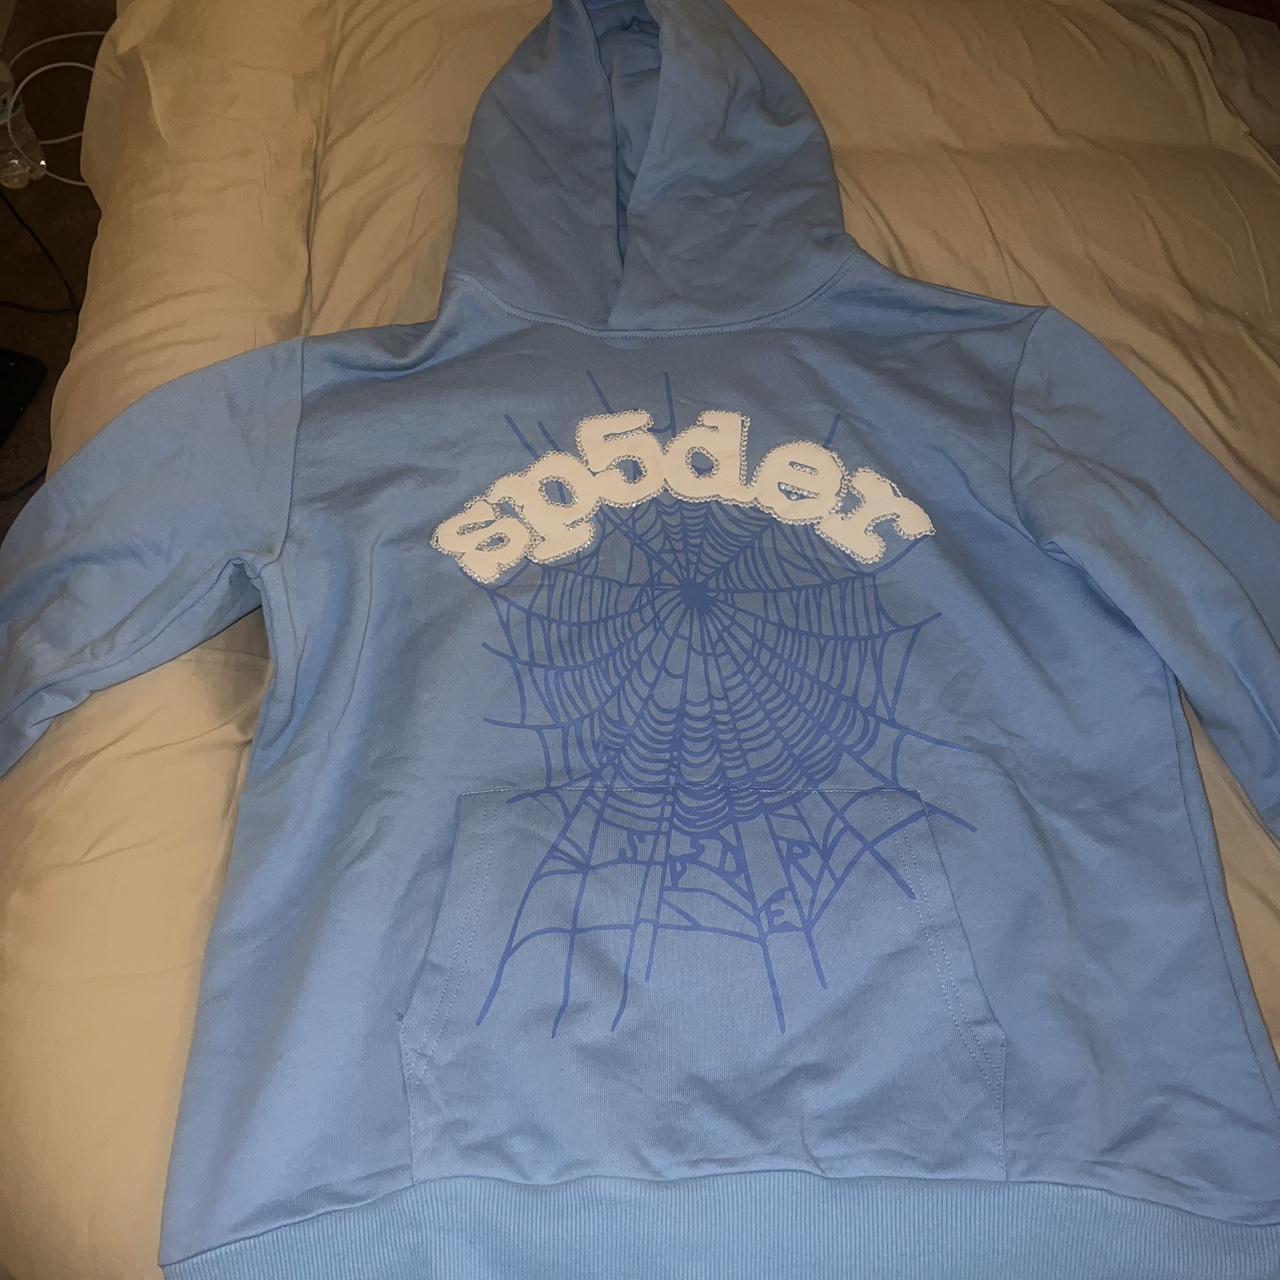 Blue Sp5der hoodie (Brand new/Never worn) Size... - Depop